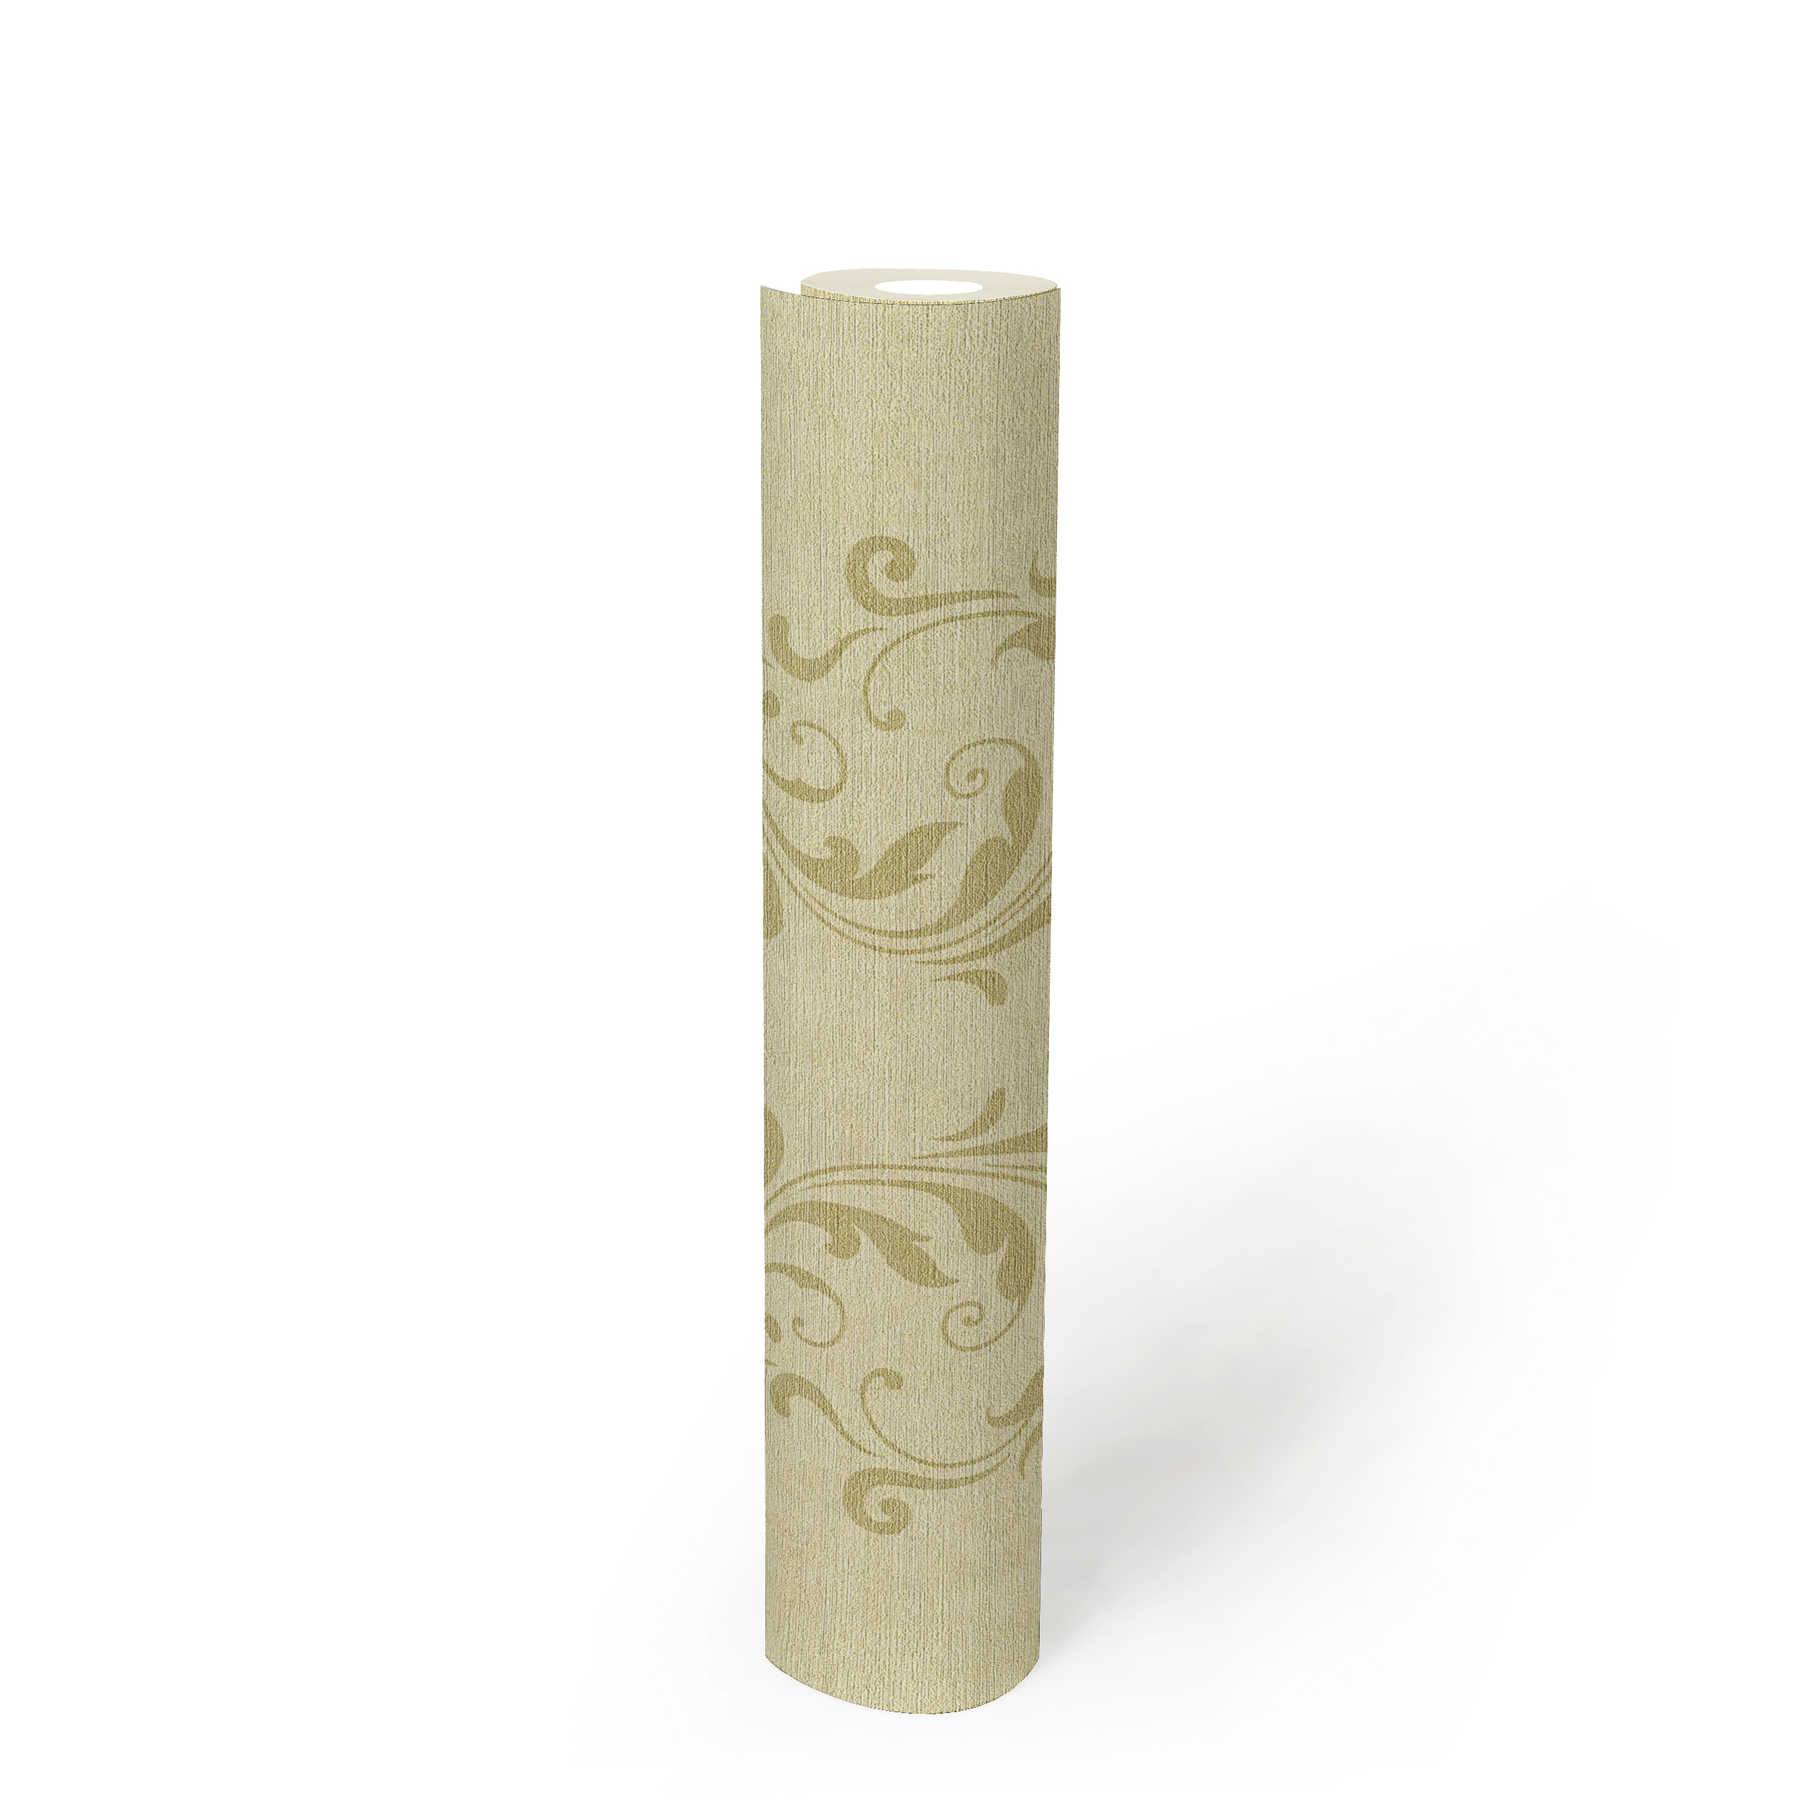             Papier peint avec motif de rinceaux baroques & effet structuré - beige, métallique
        